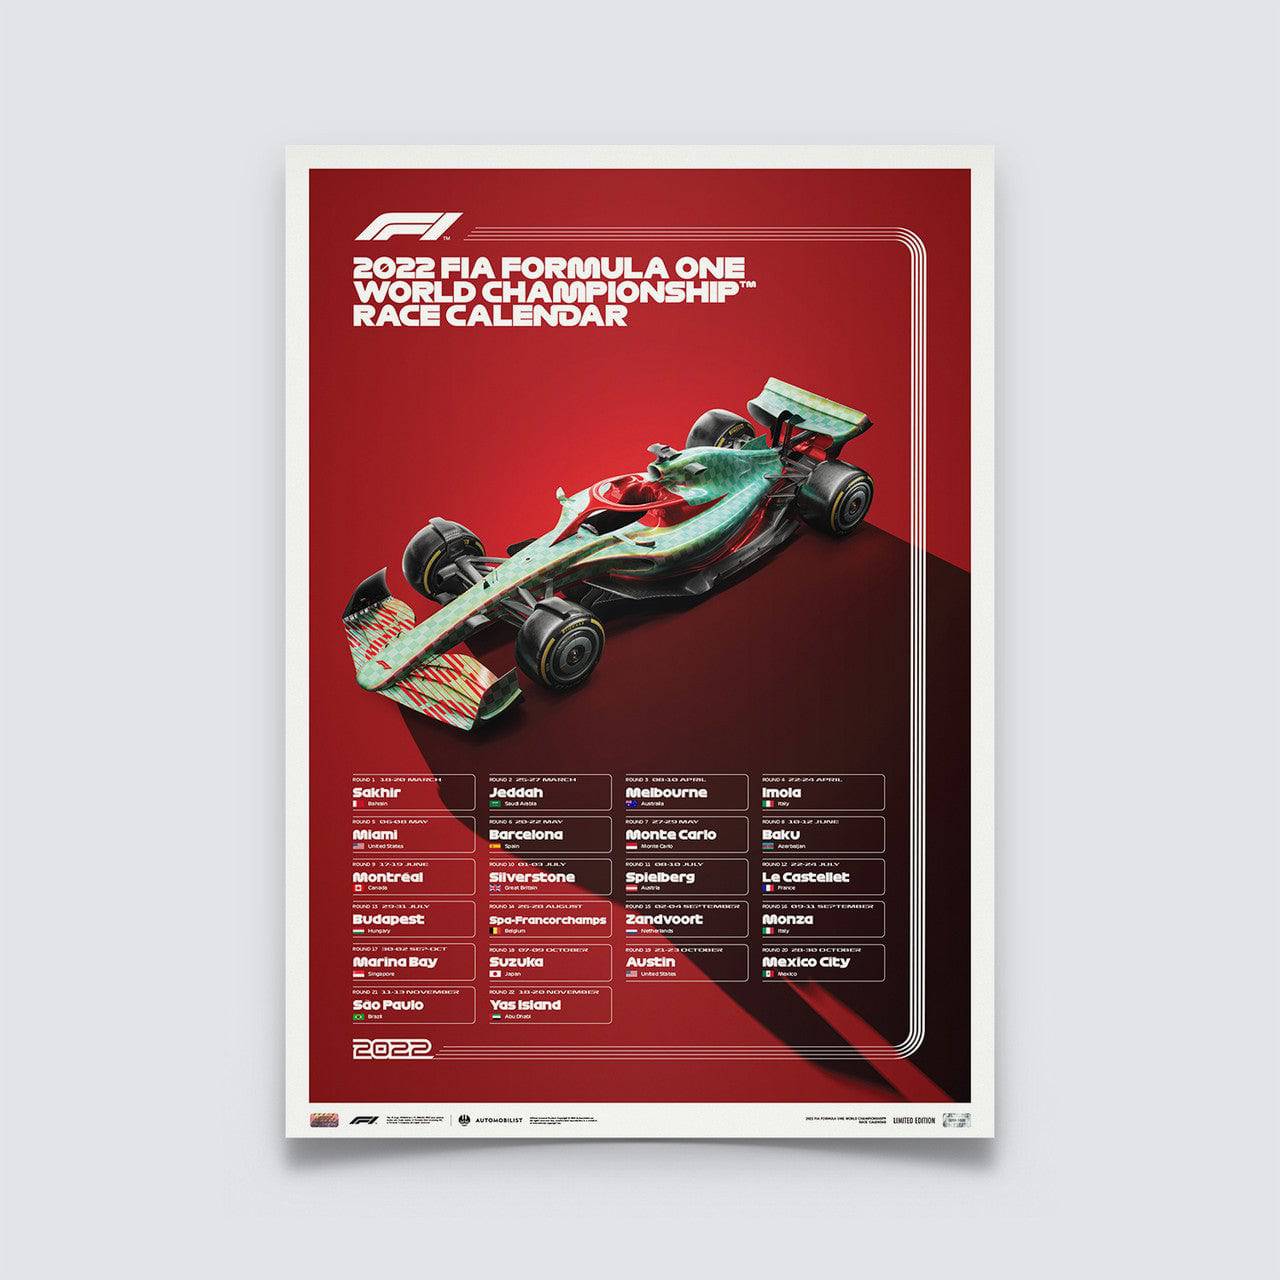 2024 FIA Formula 1 Calendar Announced  Federation Internationale de  l'Automobile